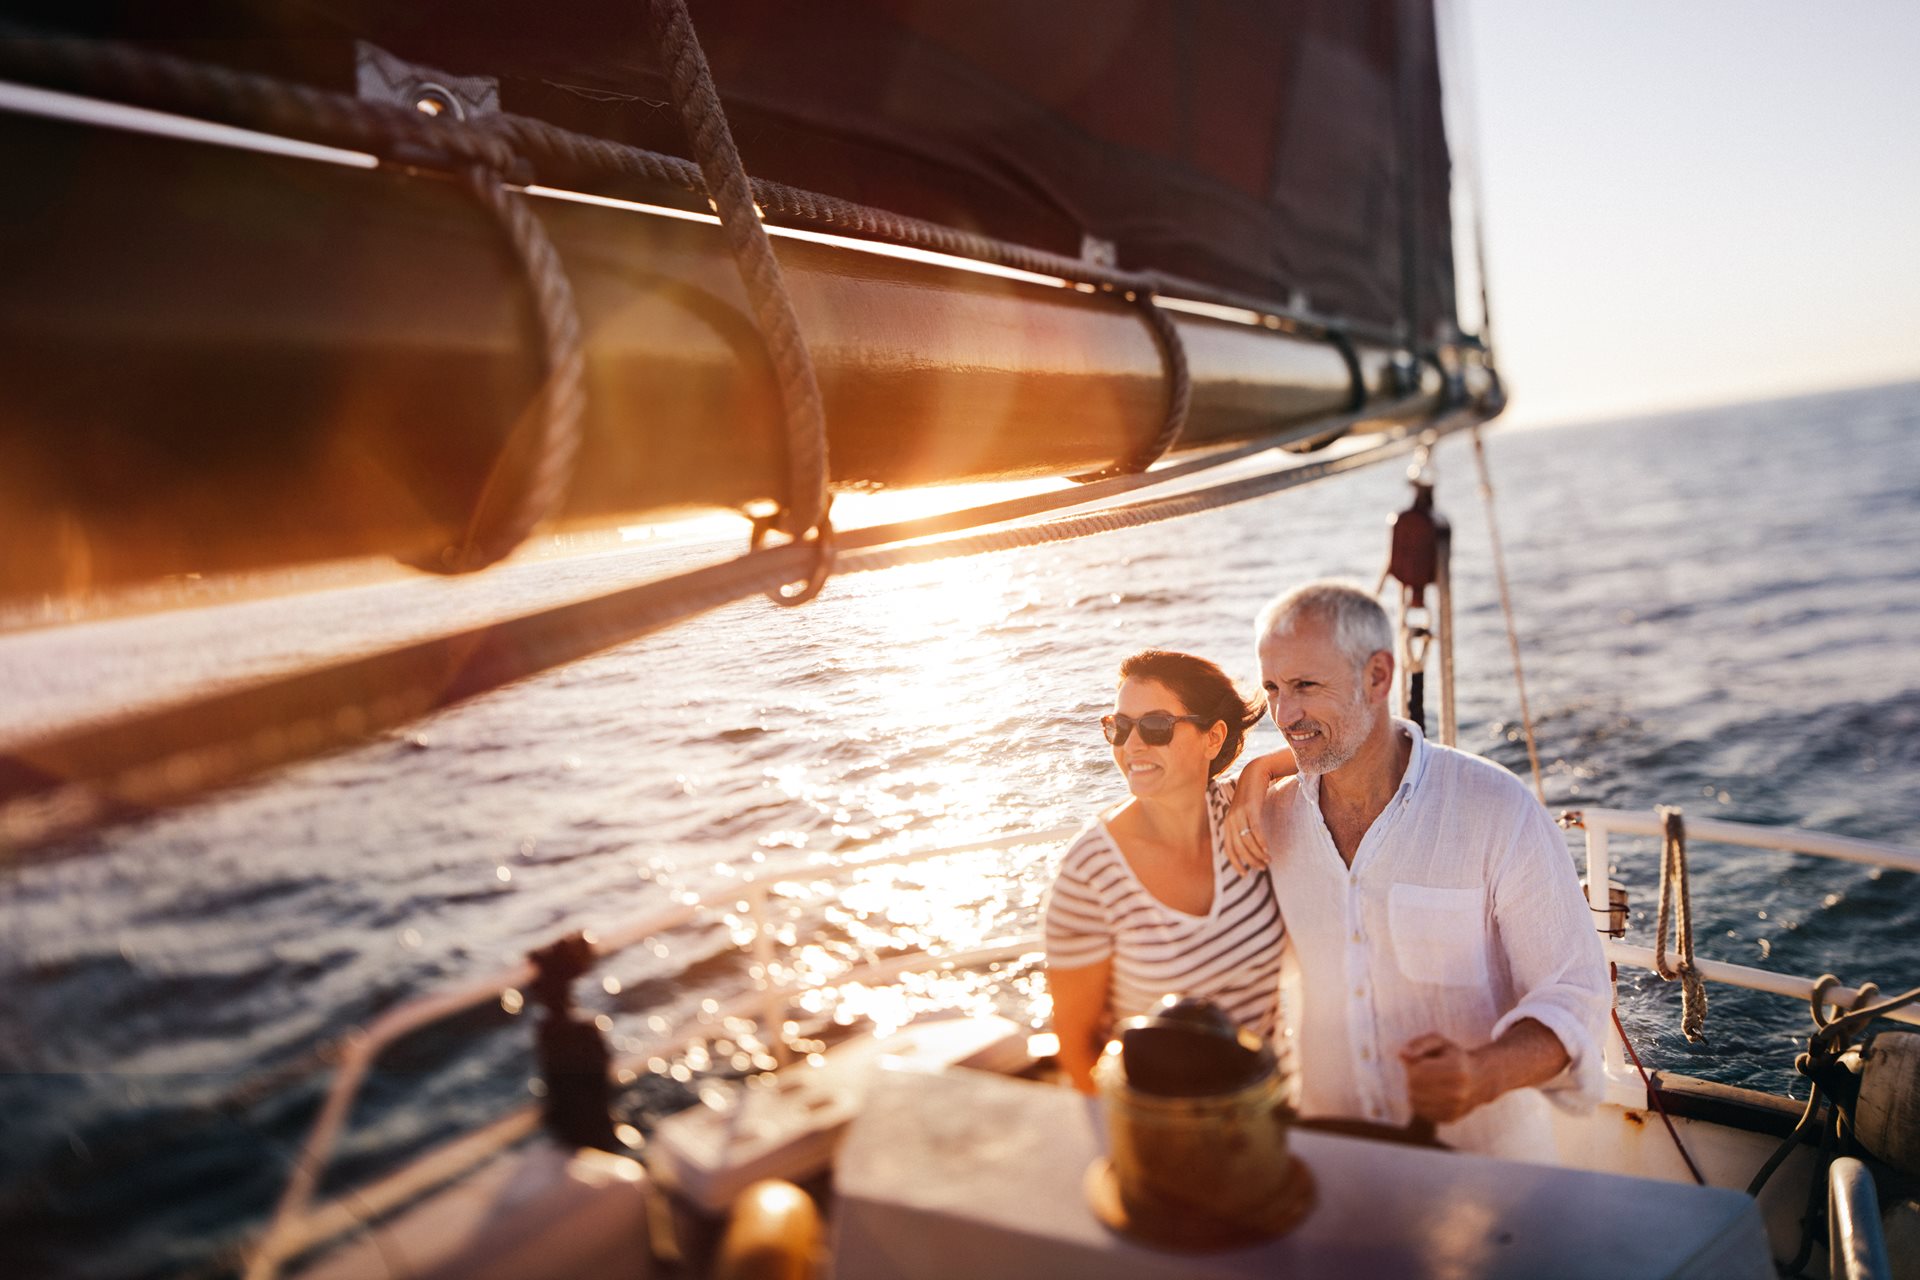 Senior couple enjoying leisure cruise on small boat